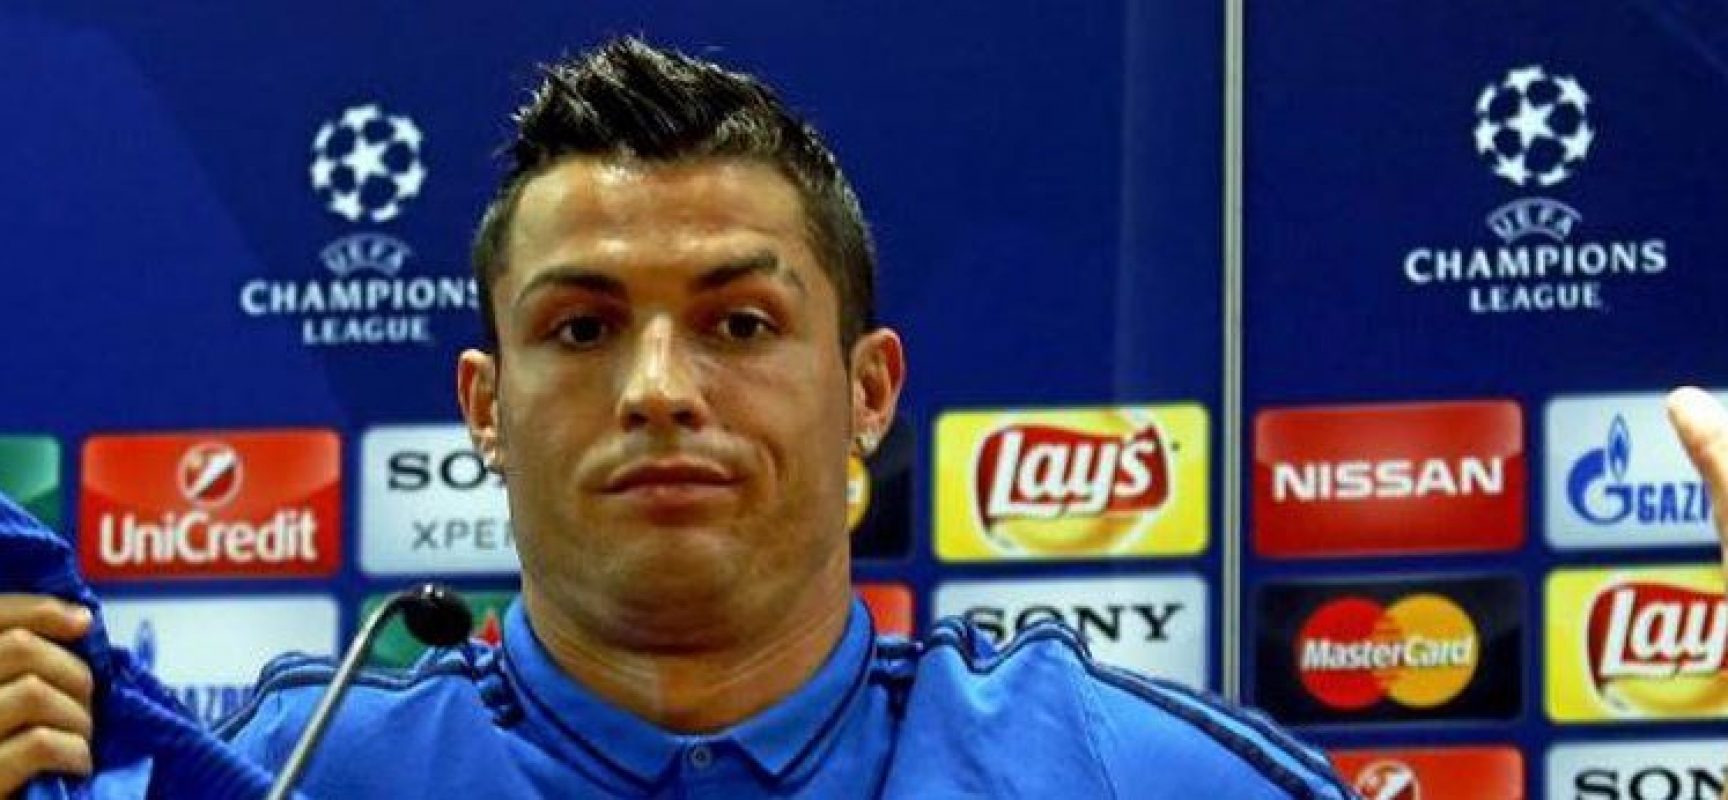 Cristiano Ronaldo responde à críticas: “Me surpreende a opinião pública a meu respeito”